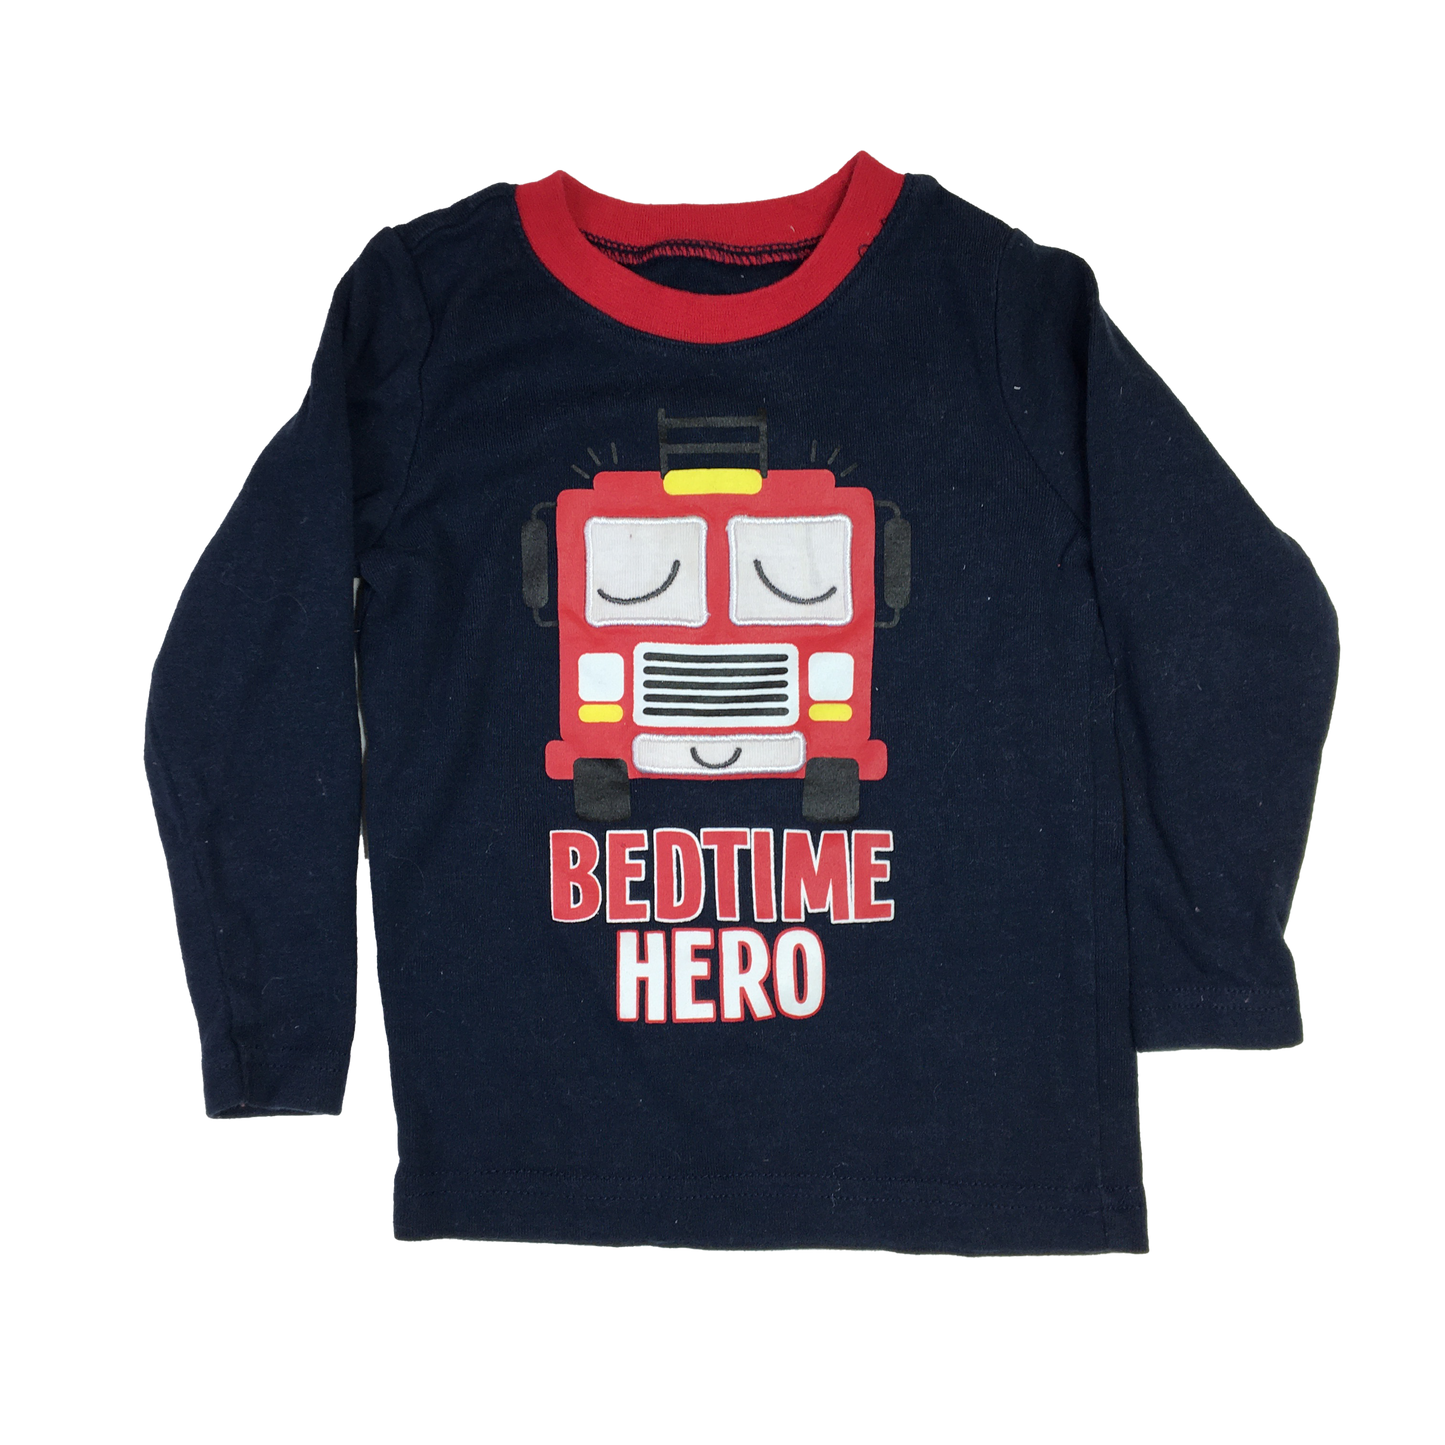 George Navy Long Sleeve PJ Top with "Bedtime Hero" 18-24M